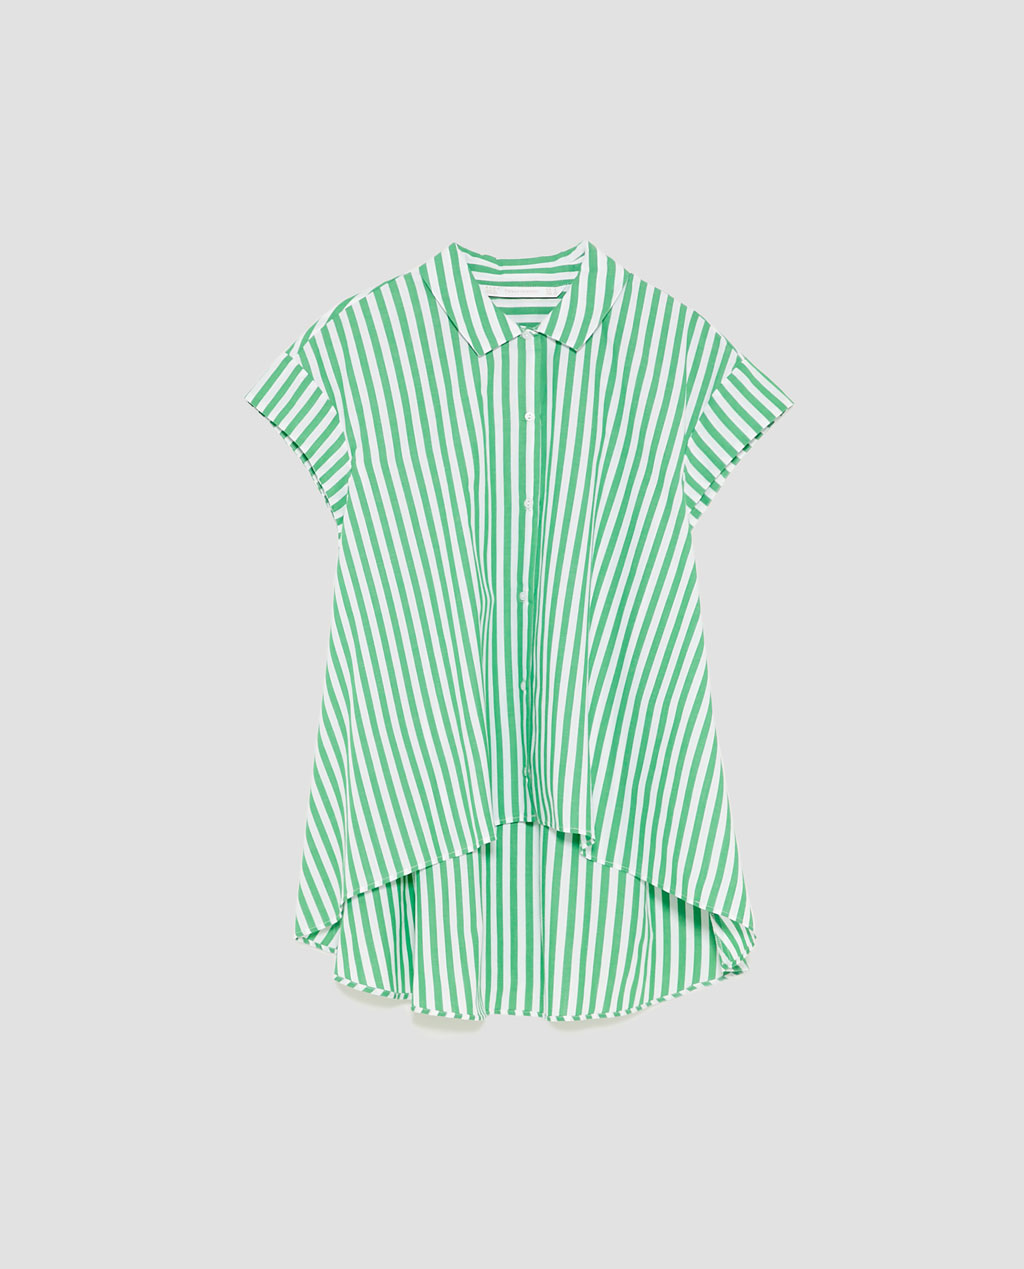 Camisa riscas assimétrica, Zara, €19,95